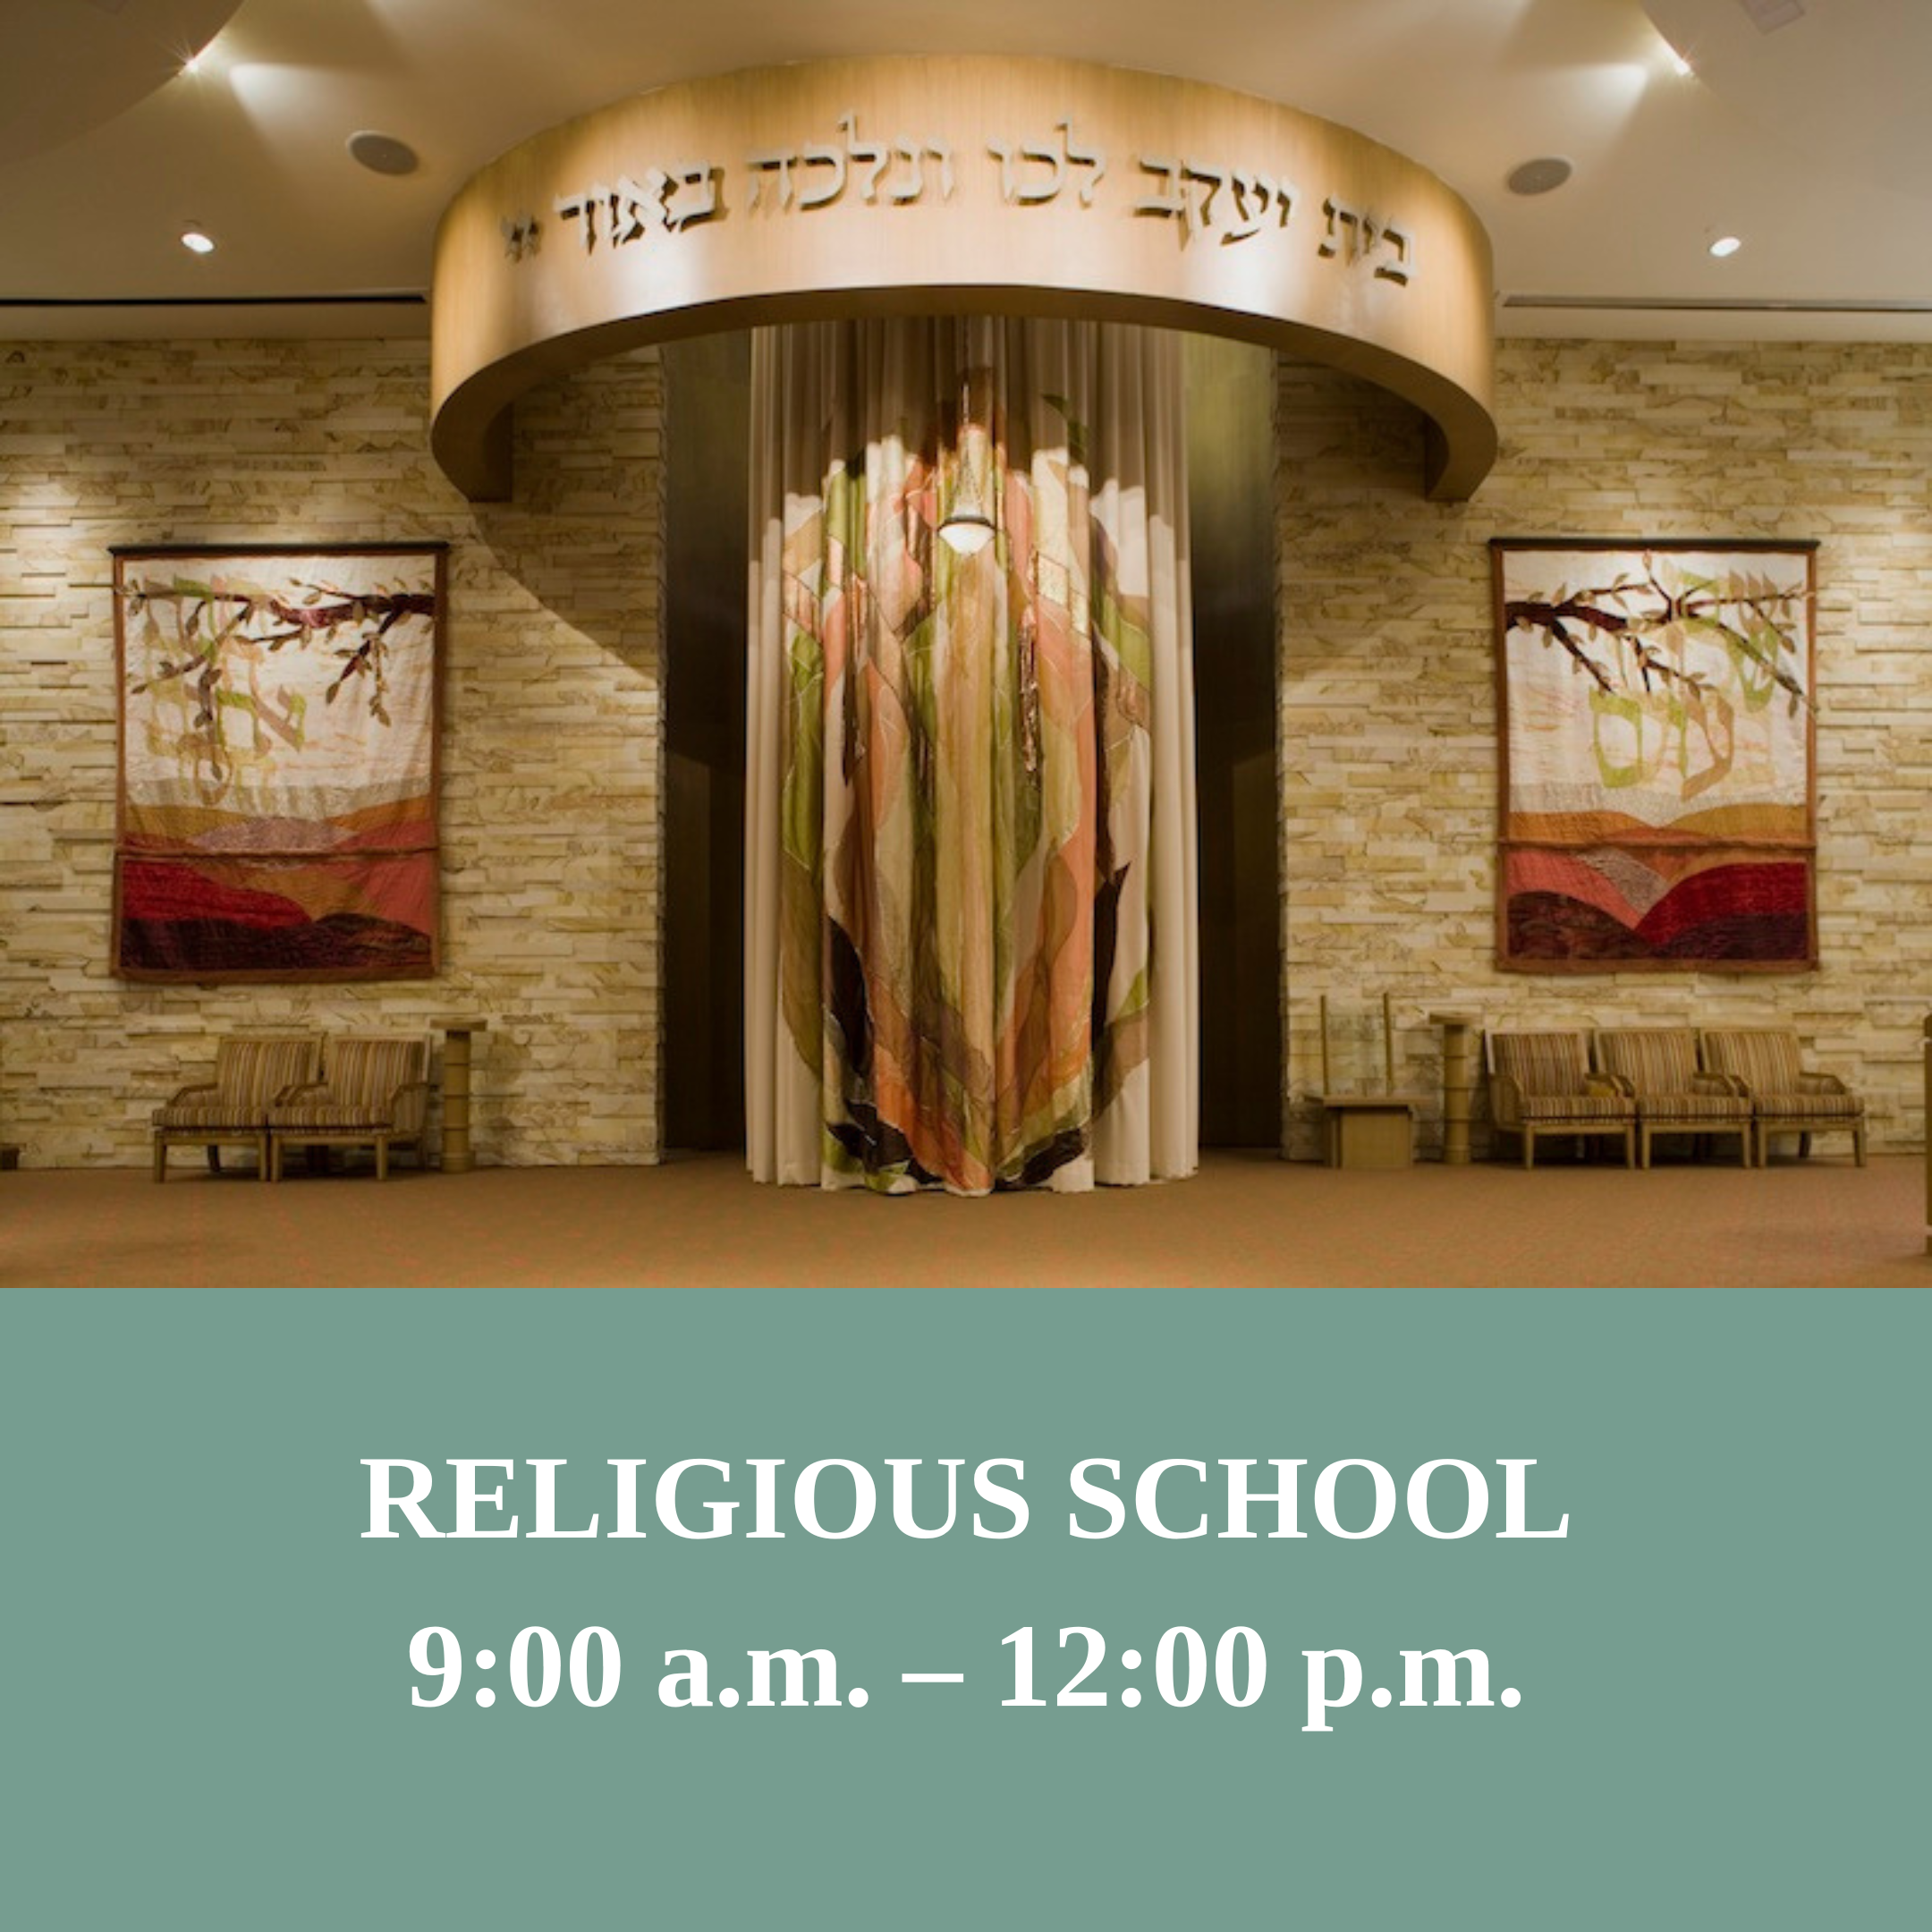 RELIGIOUS SCHOOL